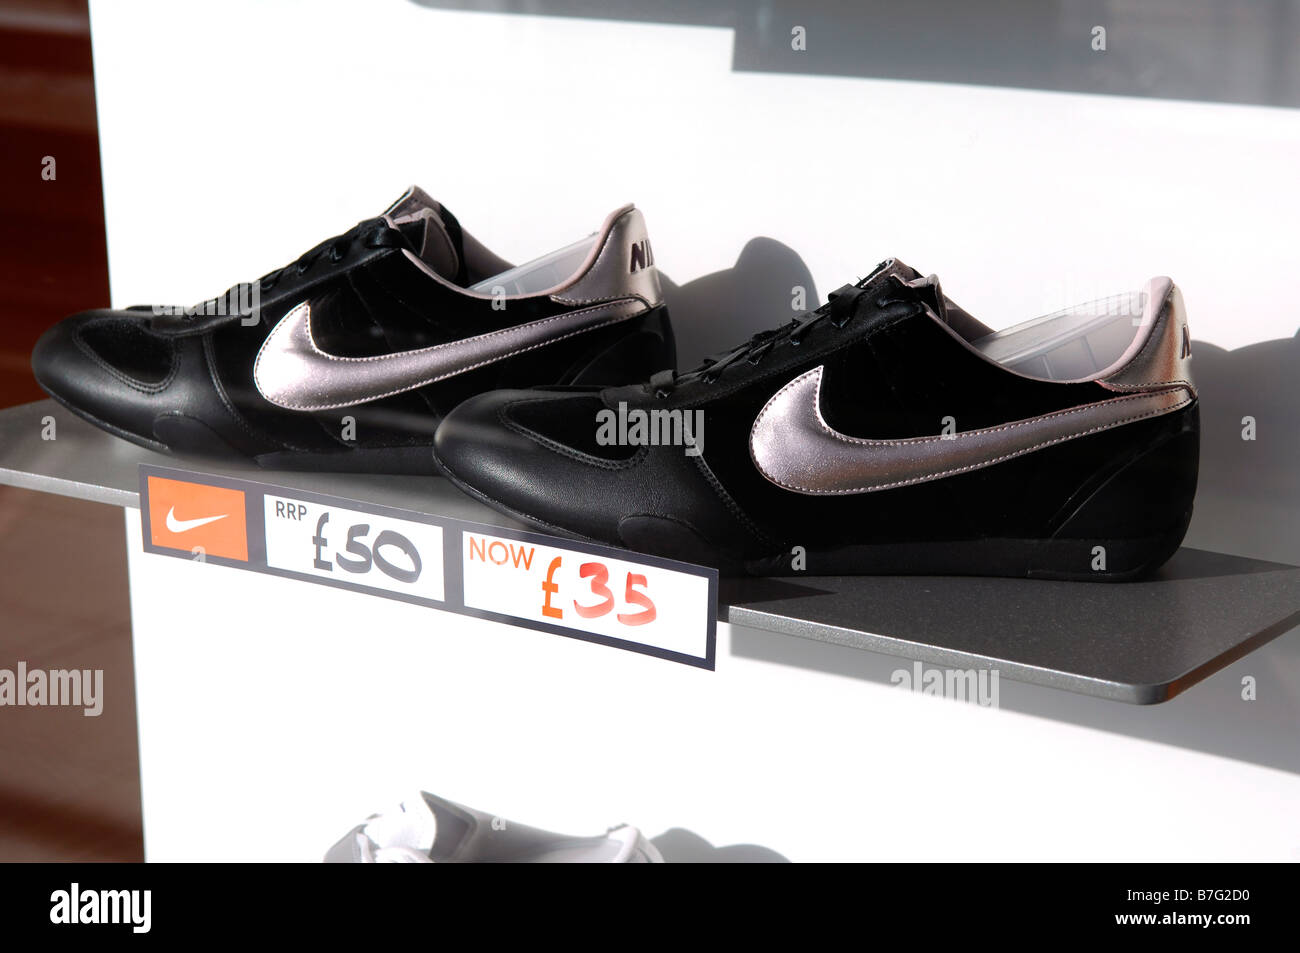 Nike Schuhe Trainer Ausbildung Schuhe Schaufenster reduziert amerikanische  Firma Fashion Retail Shop Store niketown Stockfotografie - Alamy